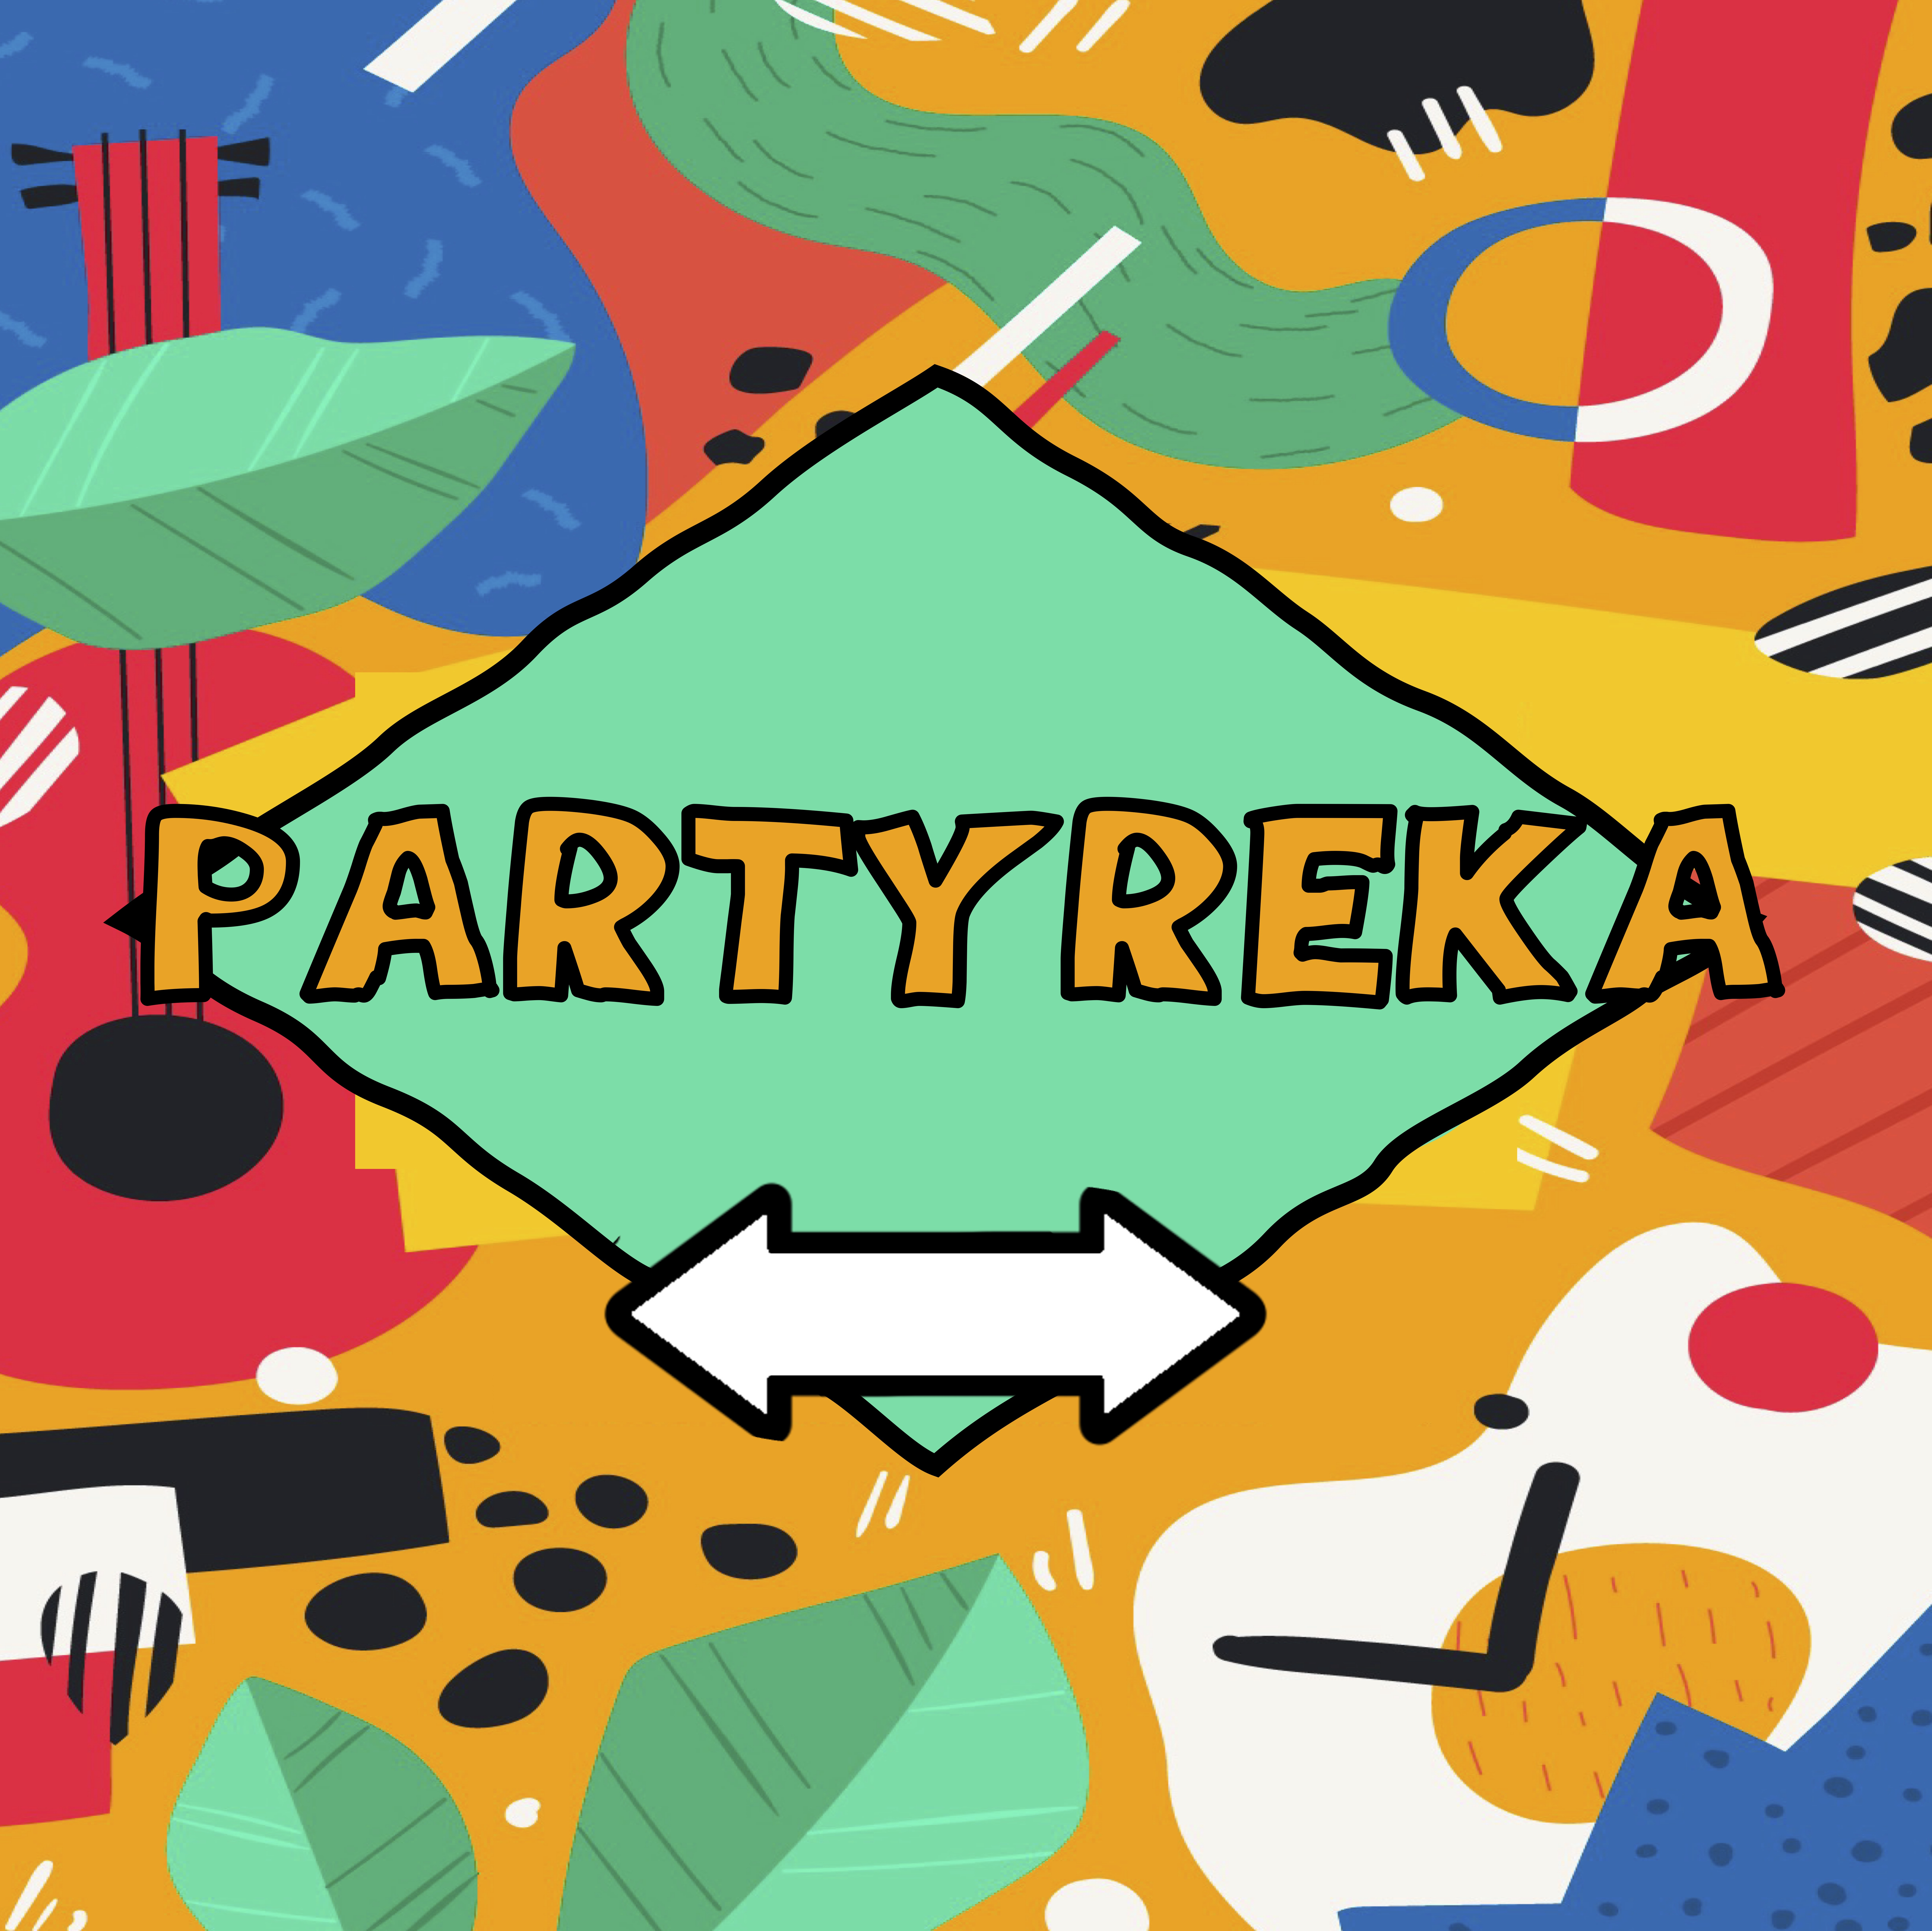 La imagen muestra una carta del Partyreka con una línea que termina en flechas por ambos extremos.